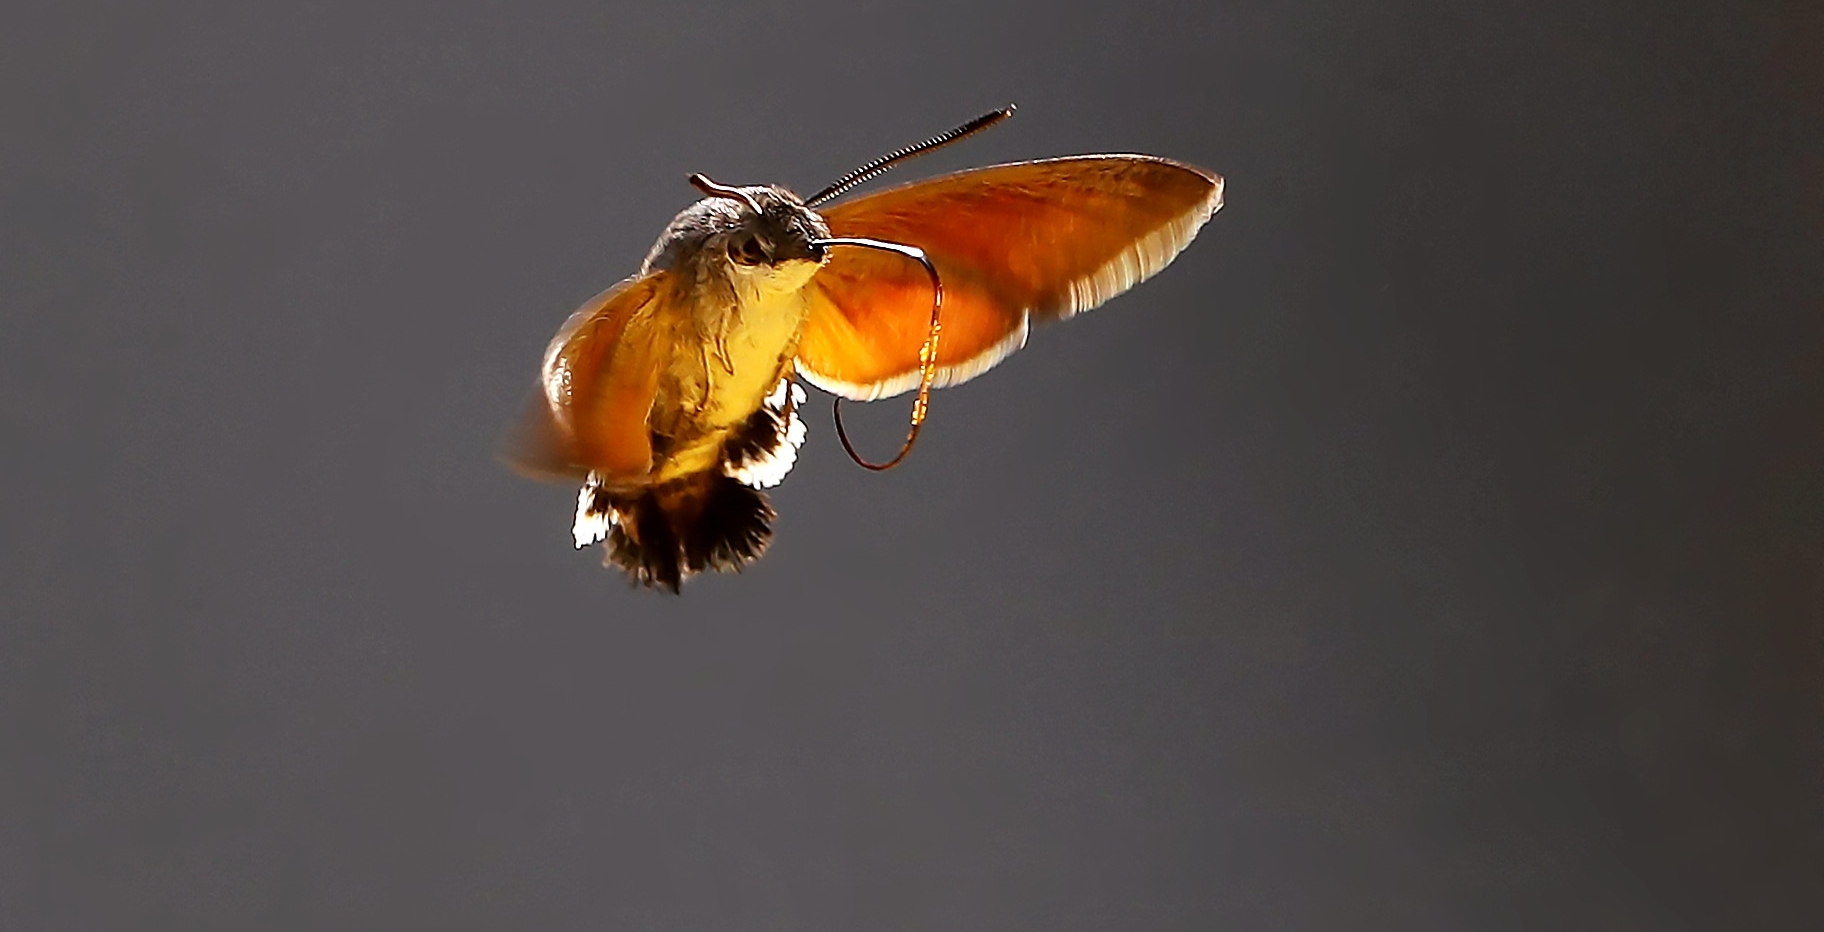 蜂鸟蛾有很多独特的习性和特征,它们像蜜蜂,能发出清晰可闻的嗡嗡声